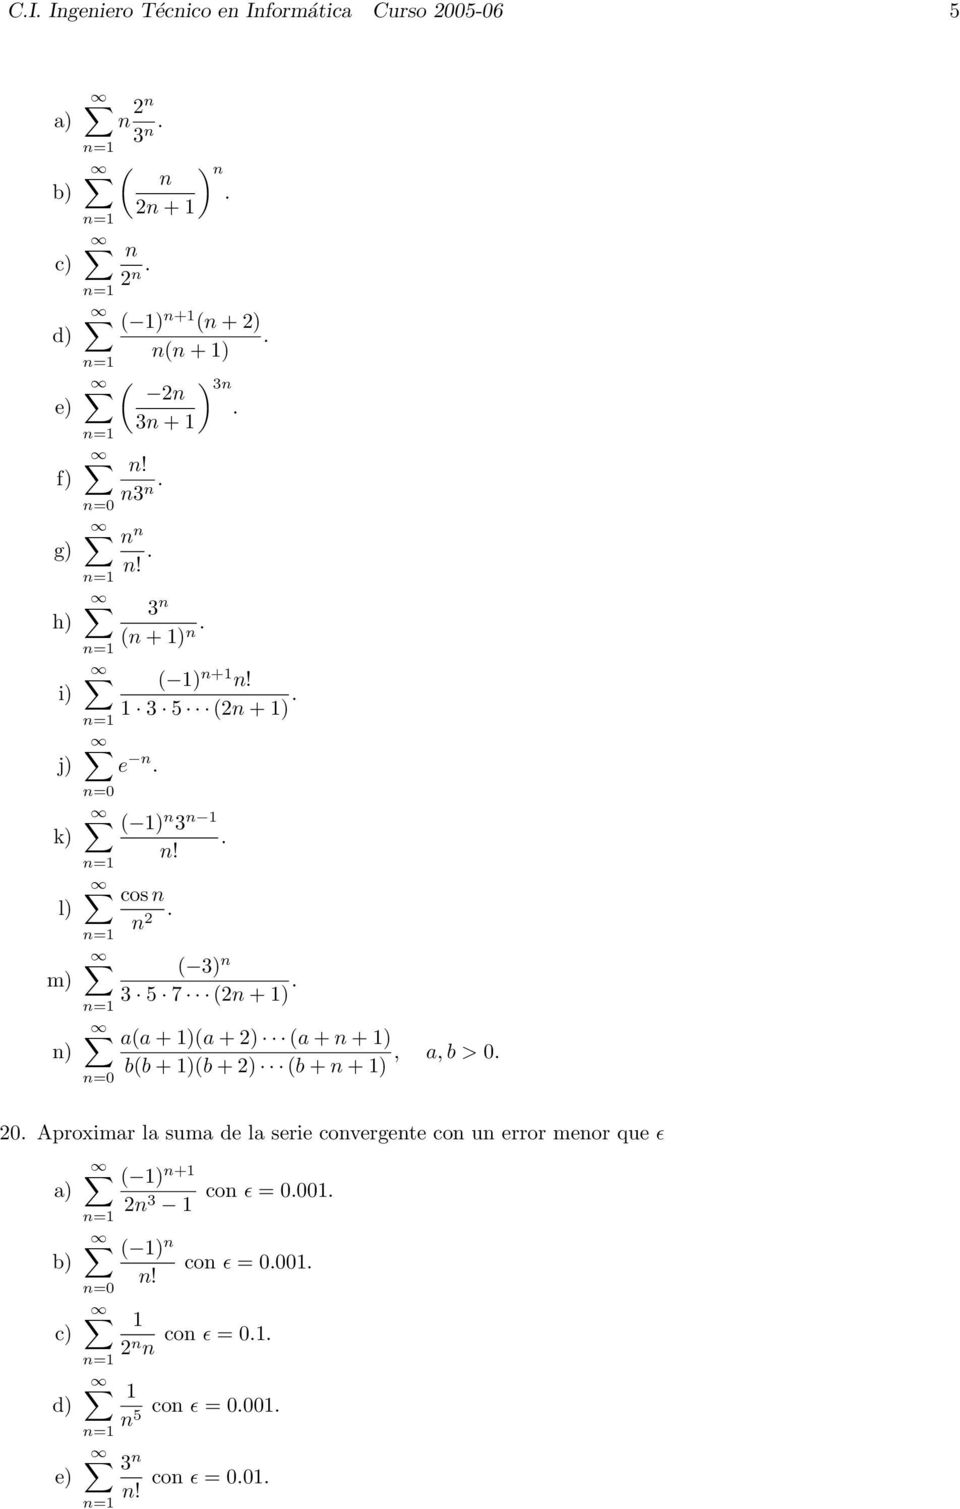 =0 cos ( 3) 3 5 7 ( + ) a(a + )(a + ) (a + + ), a, b > 0 b(b + )(b + ) (b + + ) 0 Aproximar